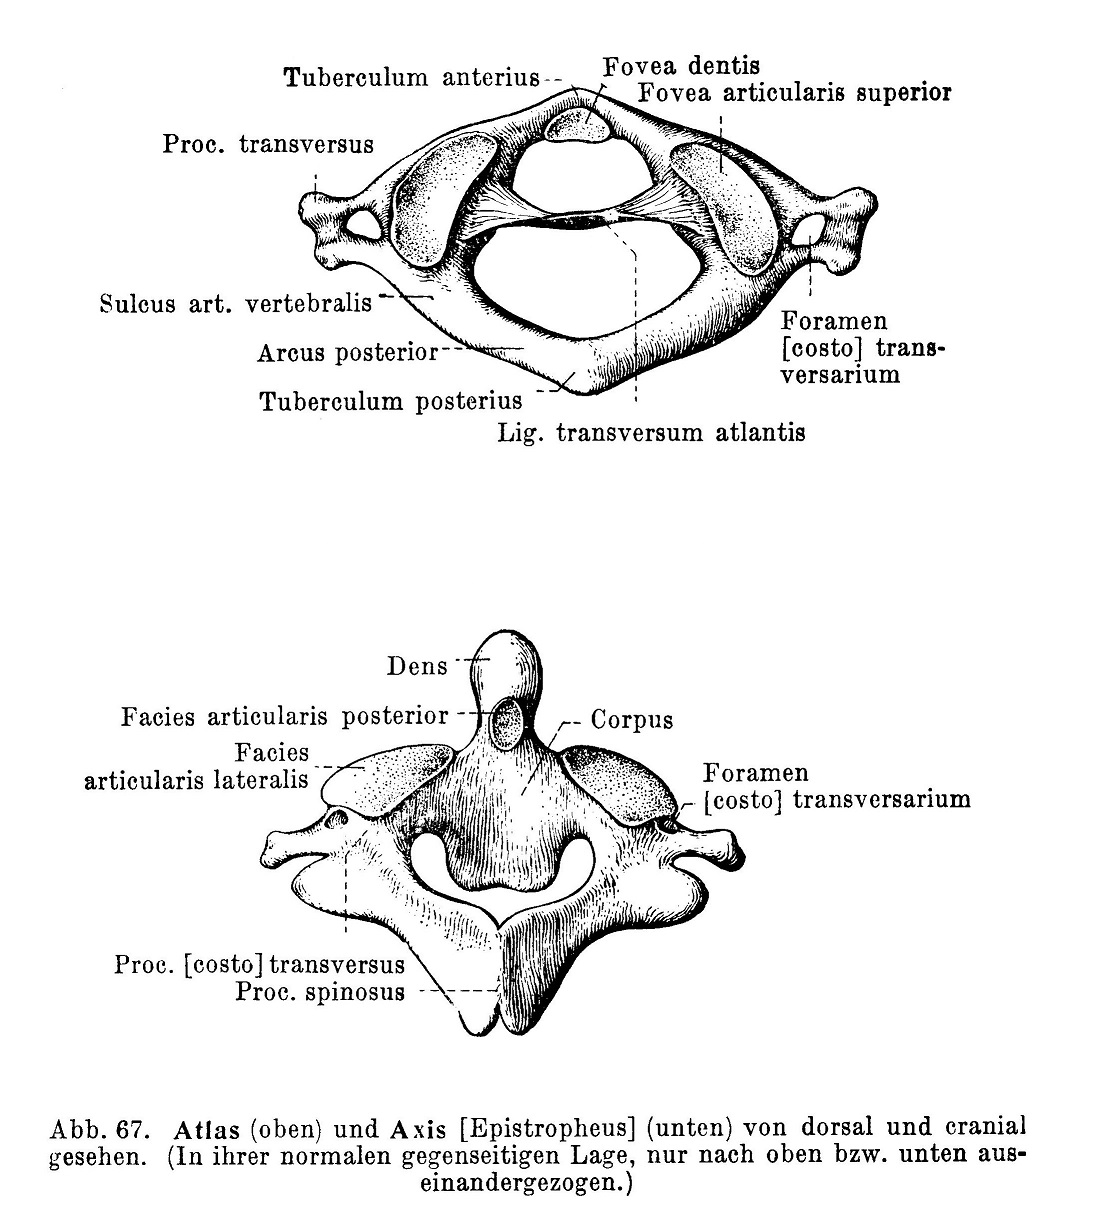 Atlas und Axis von dorsal und cranial gesehen